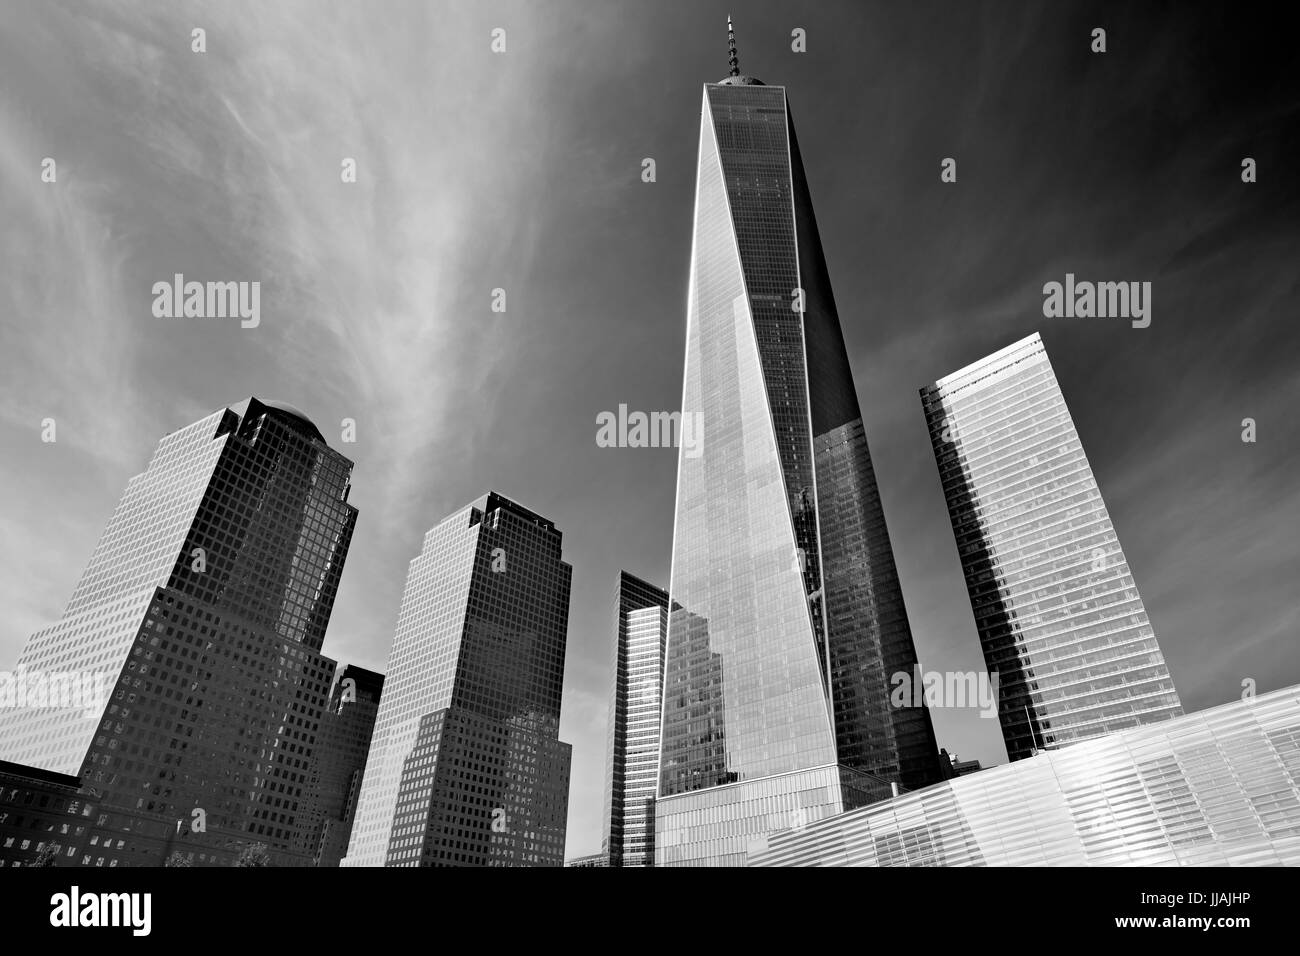 NEW YORK - 8 settembre: One World Trade Center grattacielo circondato da edifici in vetro, in bianco e nero in una giornata di sole su settembre 8, 2016 a New Yo Foto Stock